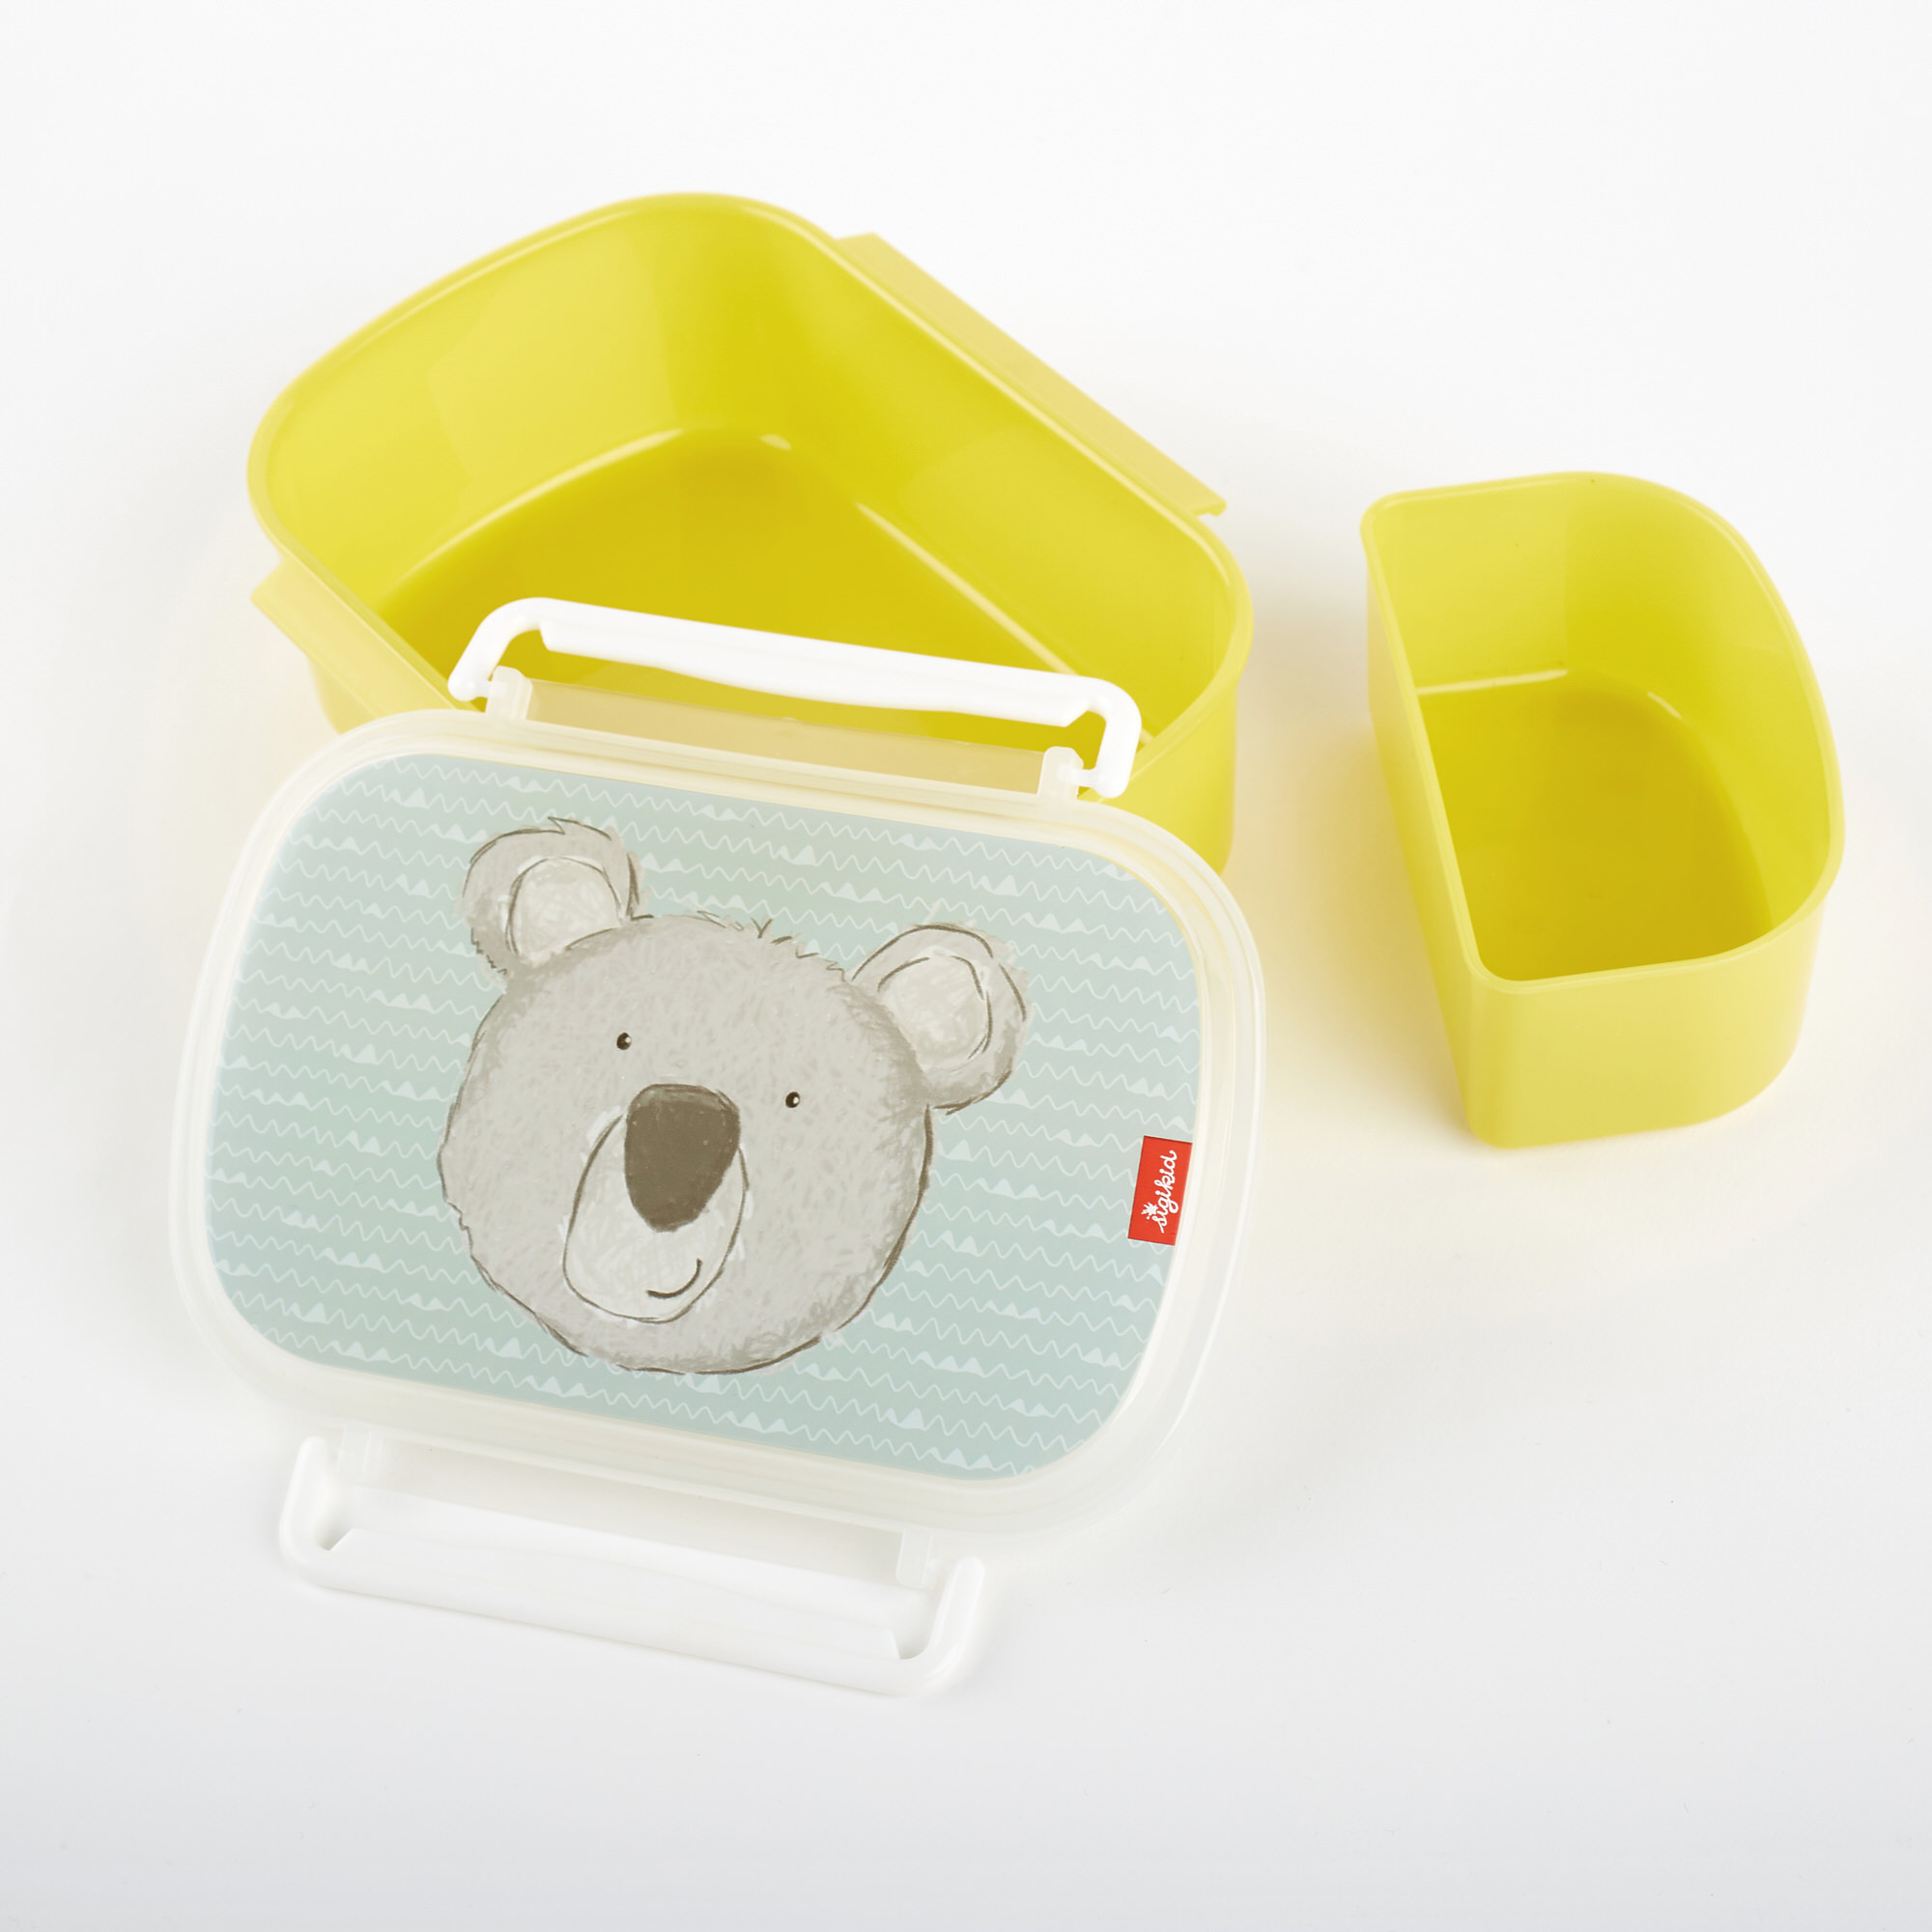 Kids' lunchbox koala bear